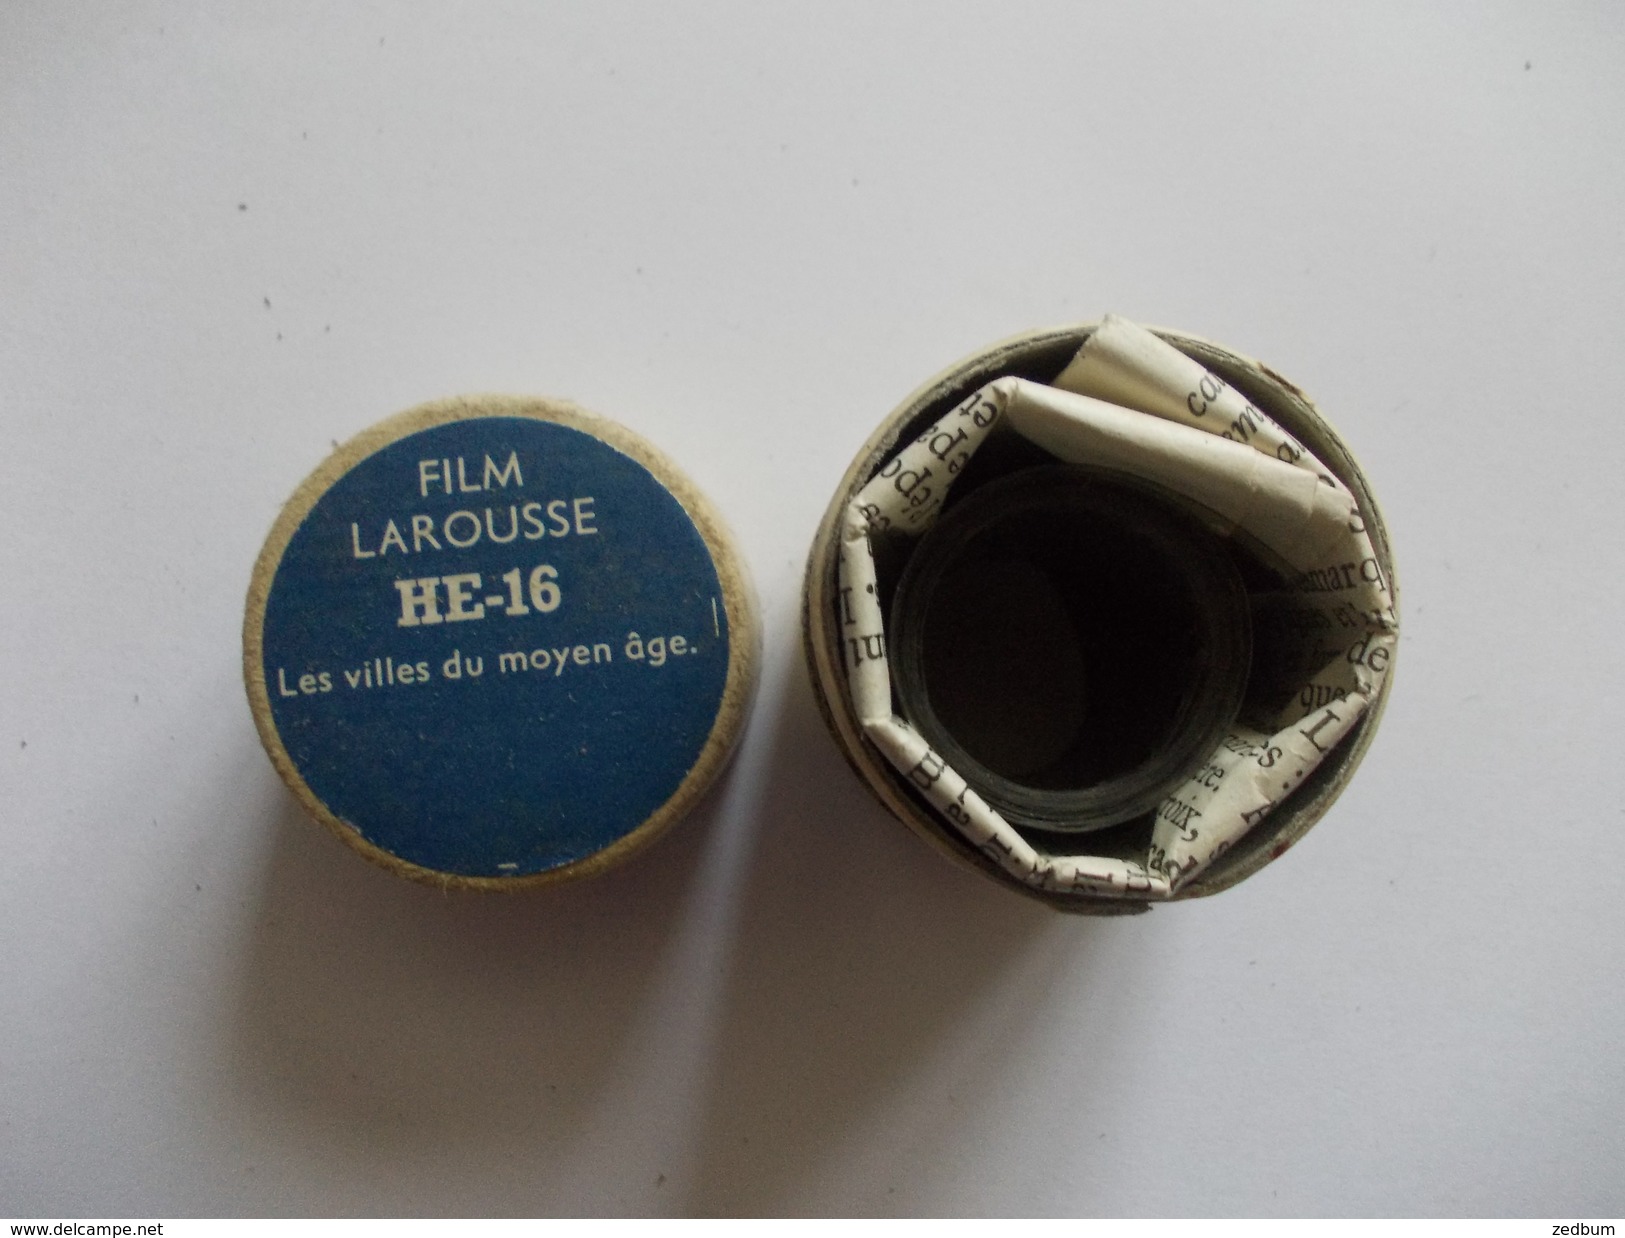 FILM FIXE Larousse HE-16 Les Villes Du Moyen âge - 35mm -16mm - 9,5+8+S8mm Film Rolls